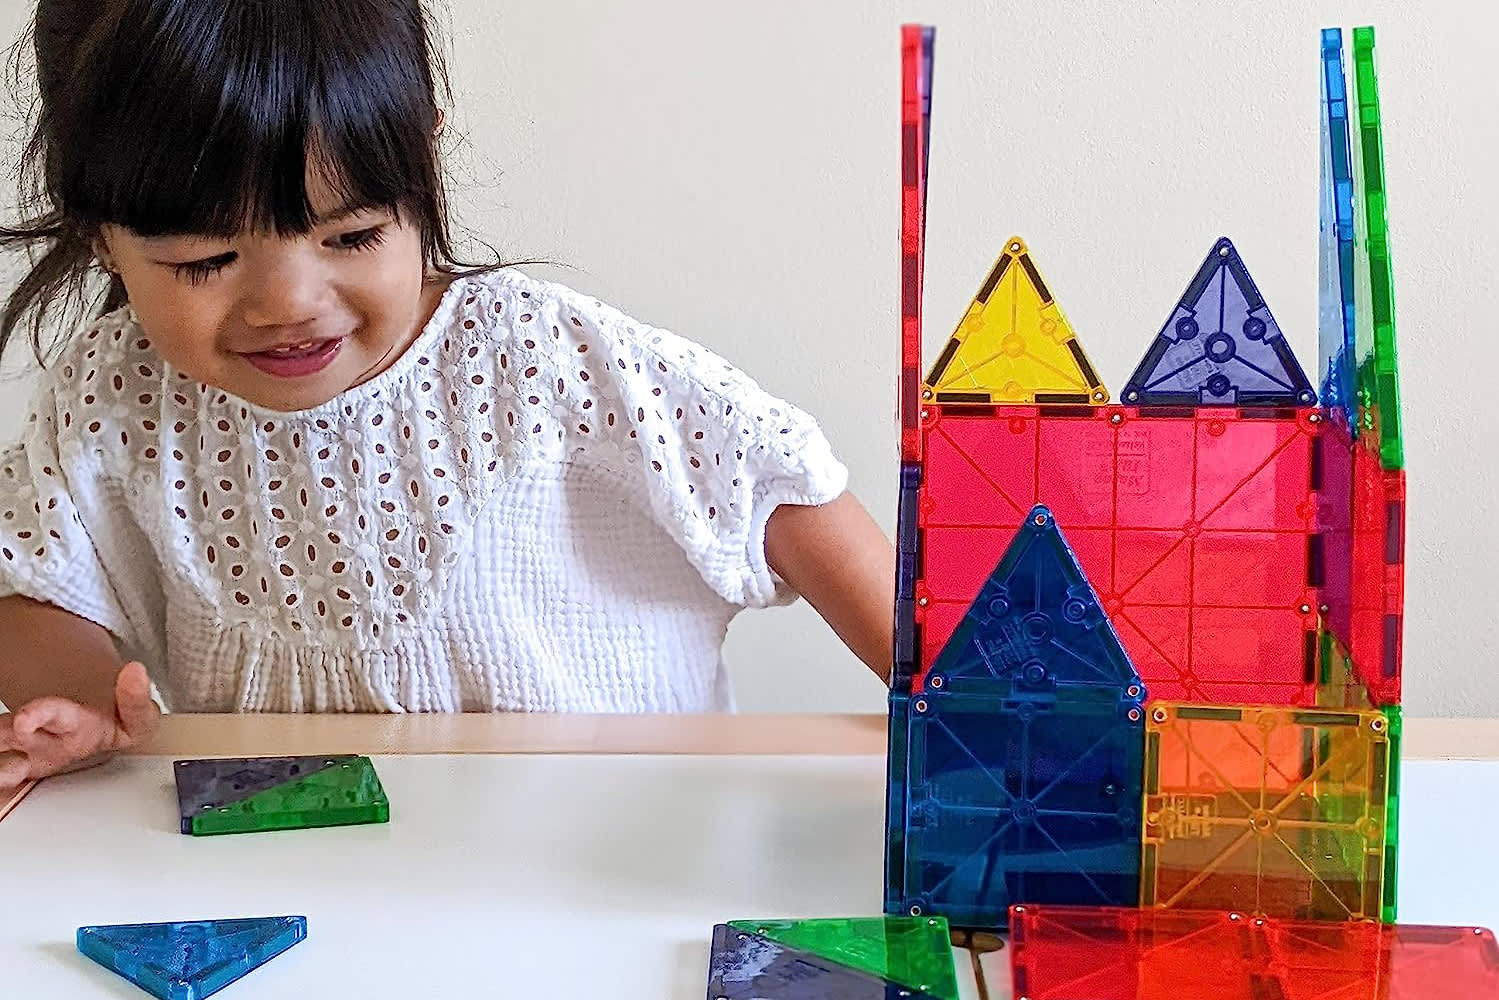 Magna-Tiles  Magnetic Building Blocks for Kids to Develop Shape